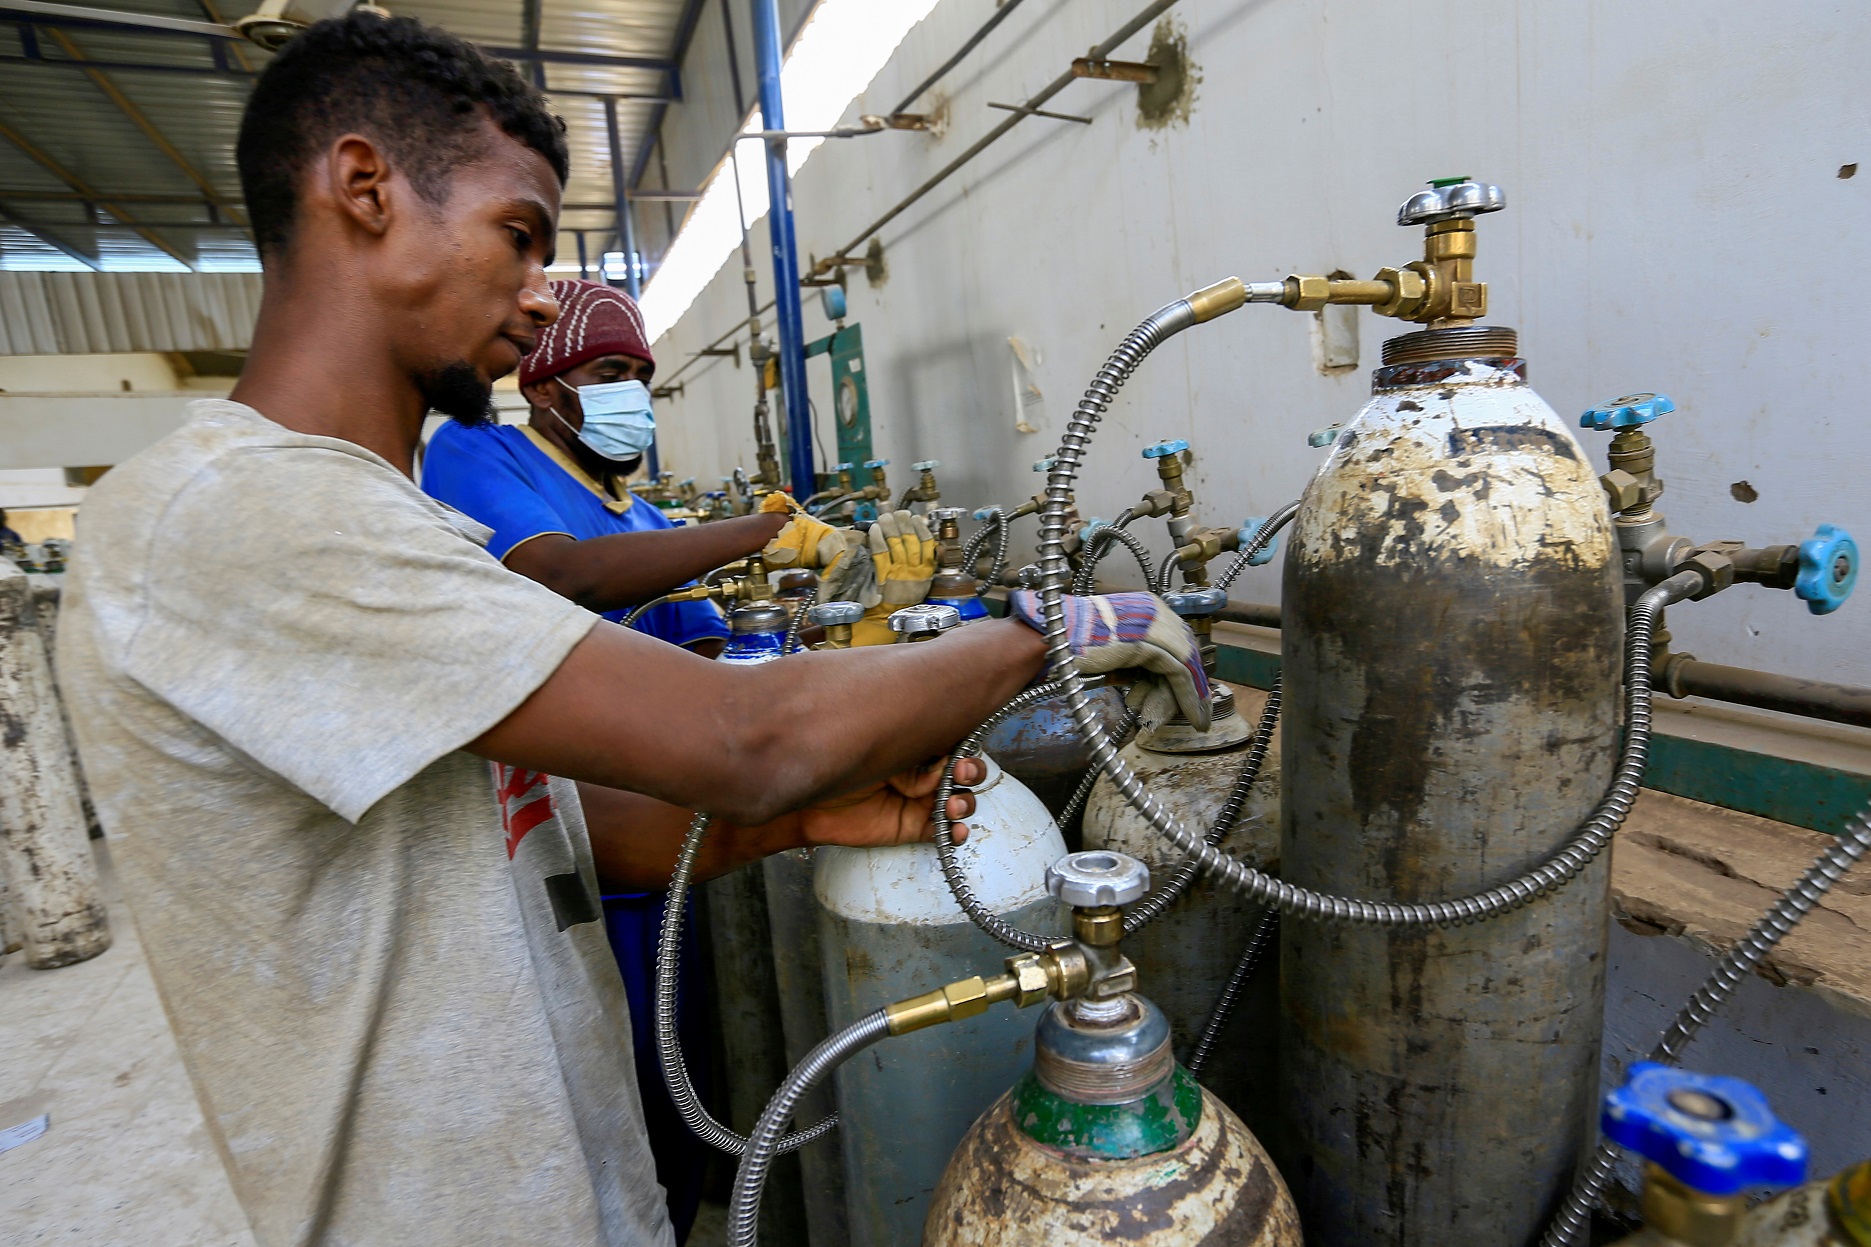 عمال يجهزون أسطوانات الأكسجين لمرضى فيروس كورونا داخل شركة الغاز السائل السودانية في الخرطوم، السودان ، 5 أيار/مايو 2021. (رويترز / محمد نور الدين عبد الله)